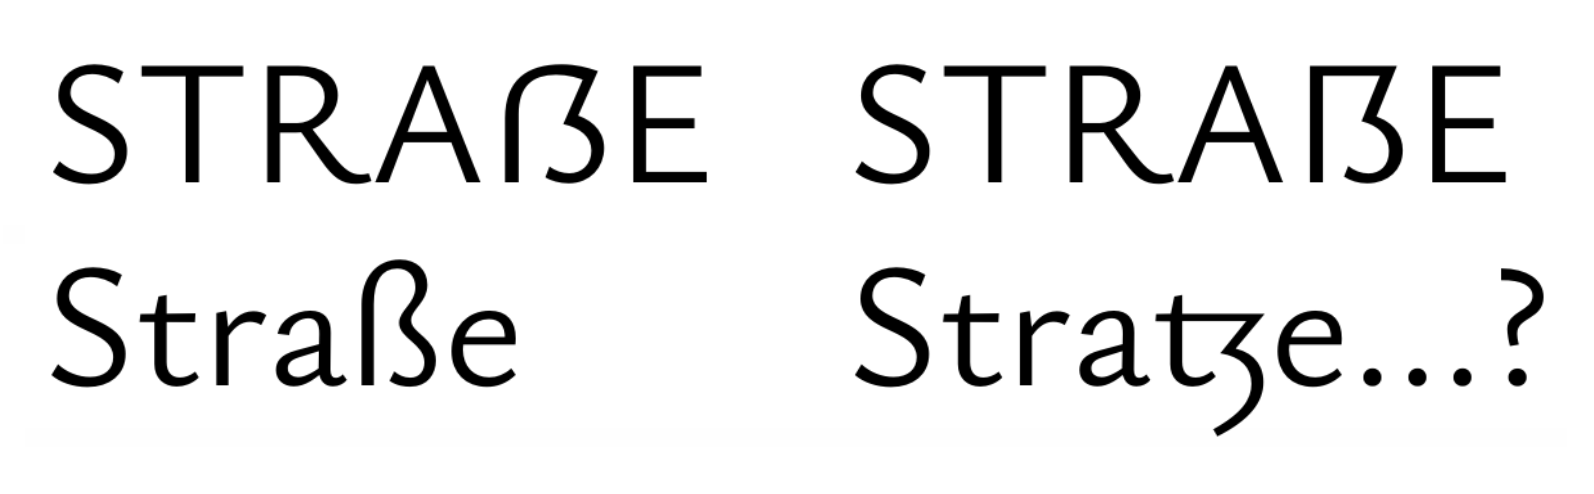 Straße or Stratze?